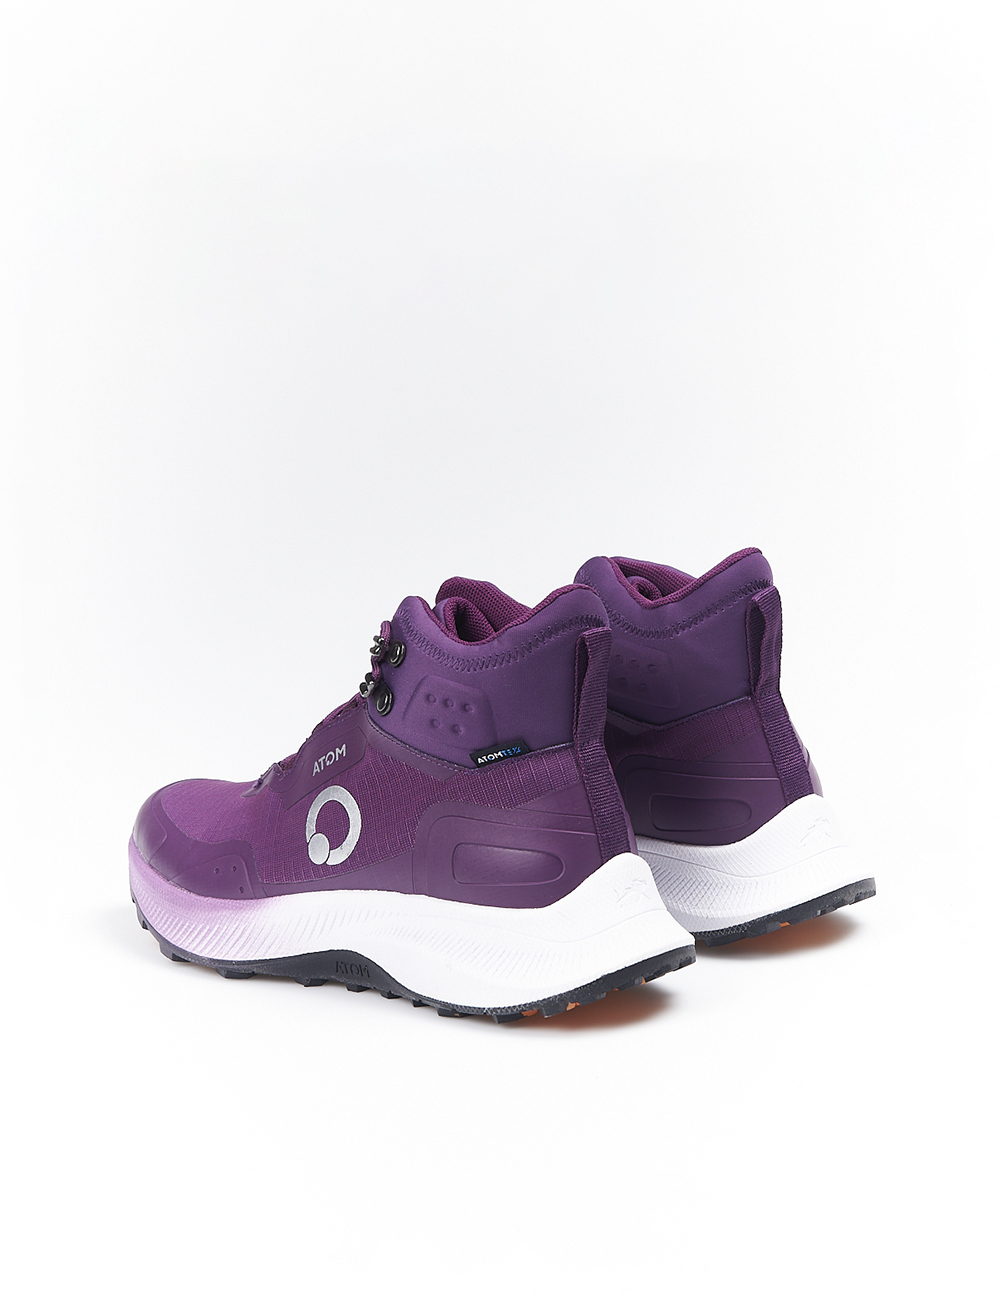 Zapatillas Abotinadas Atom By Fluchos At115 - Lila - Sneakers Para Mujer  MKP